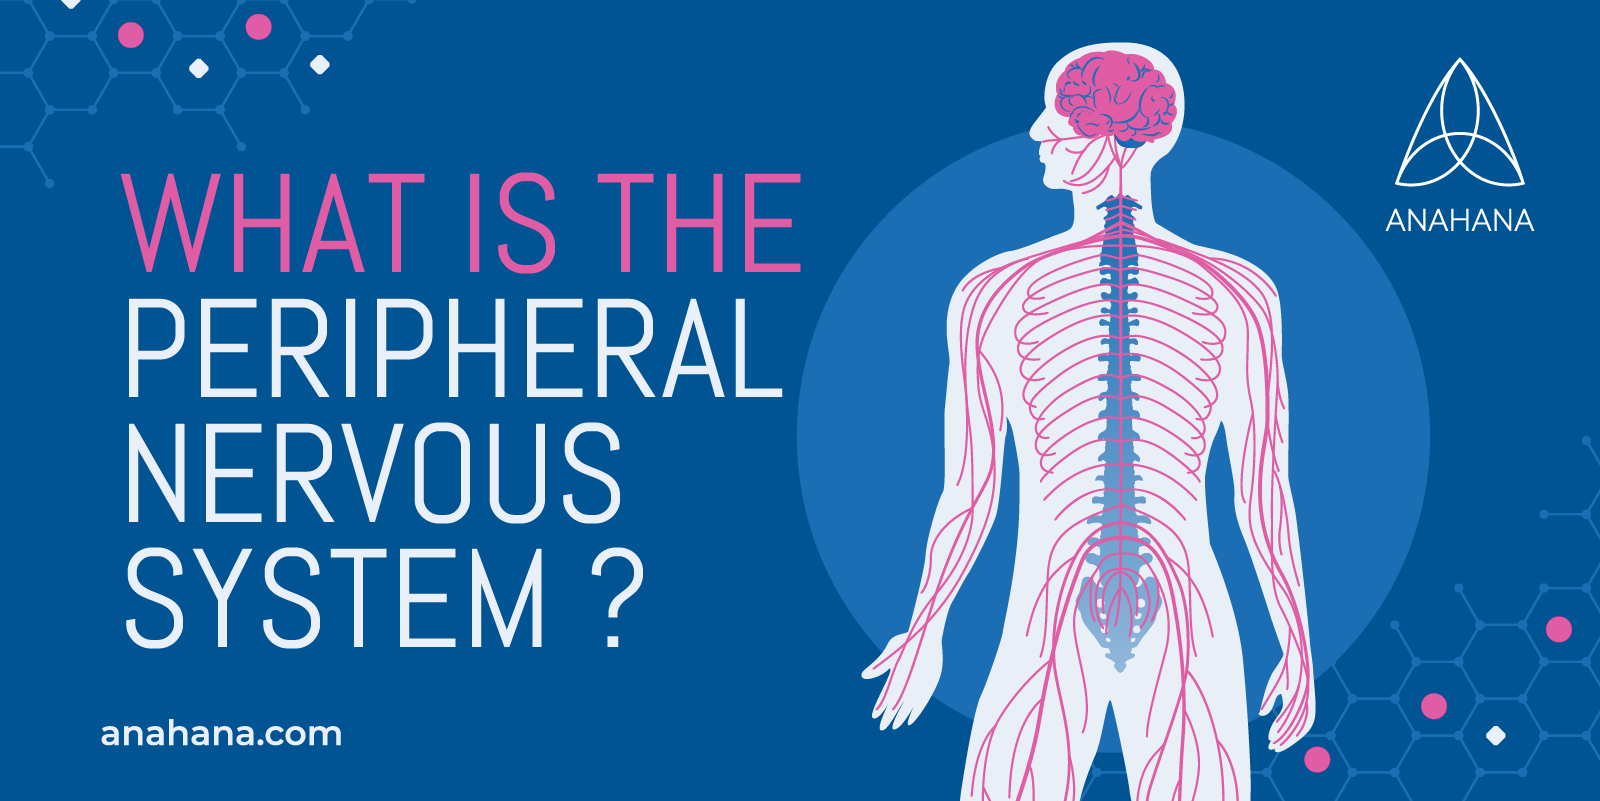 O que é o Sistema Nervoso Periférico